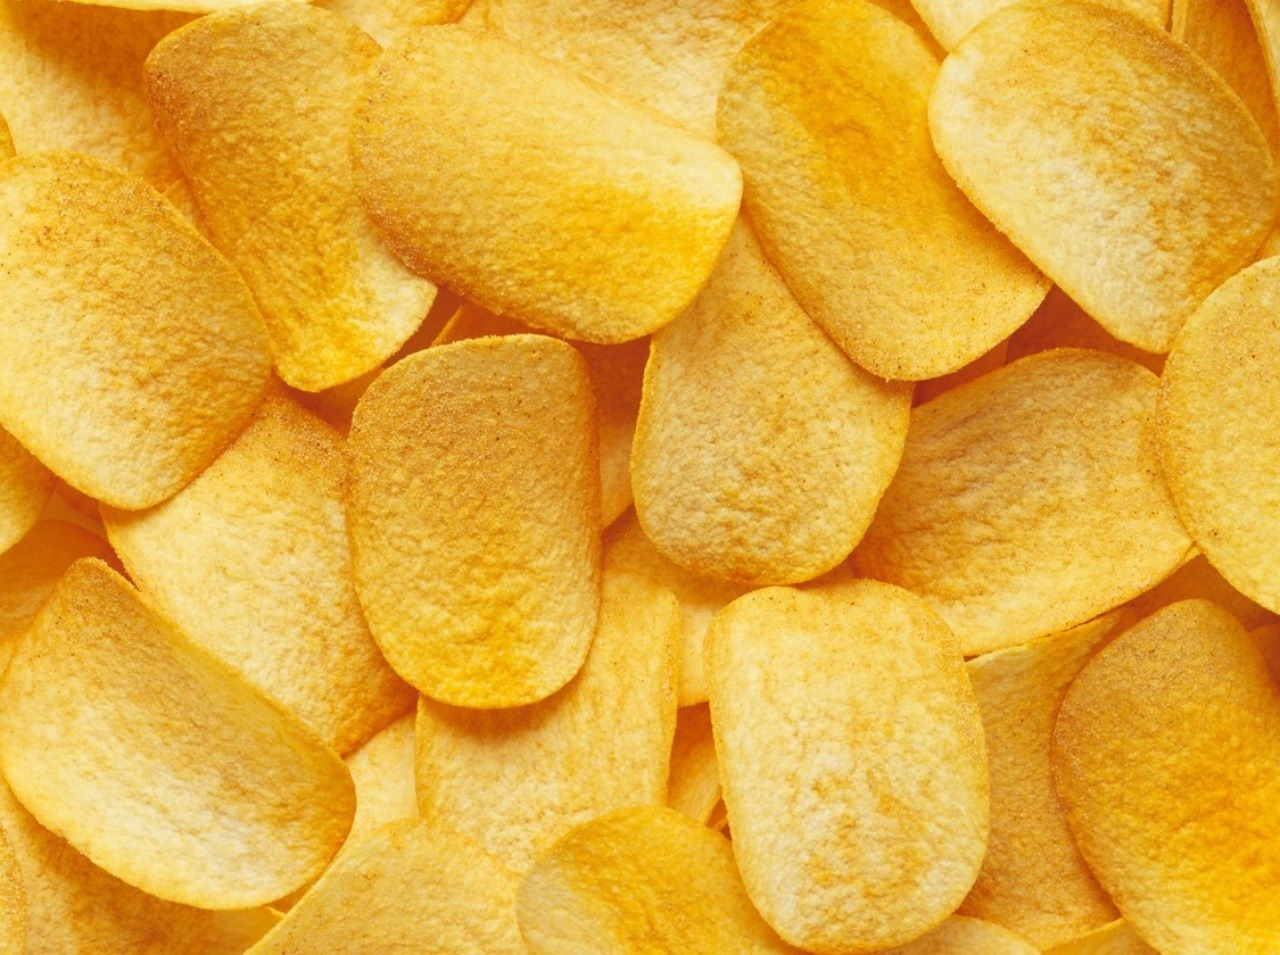 Pozor na nadmernú konzumáciu zemiakových lupienkov, obsahujú veľa tuku a kalórií. 